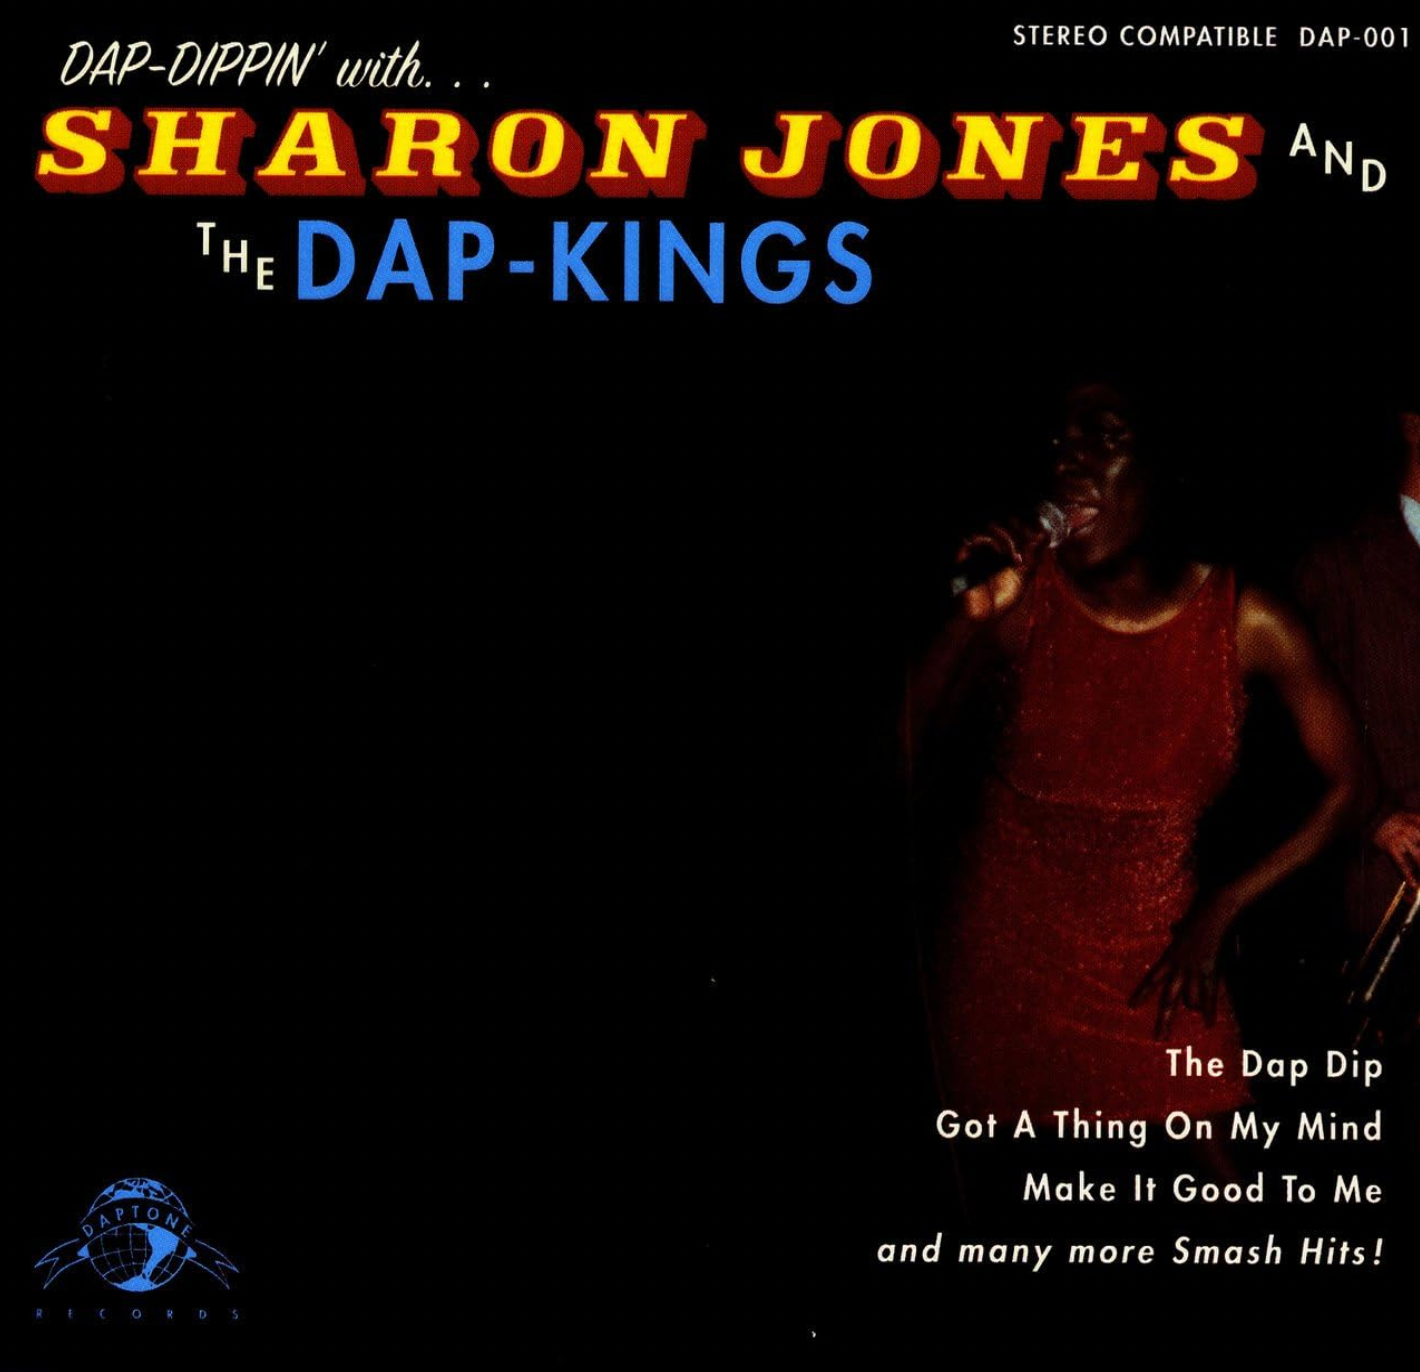 Sharon Jones and The Dap Kings 'Dap-dippin With Sharon Jones and The Dap-kings' LP